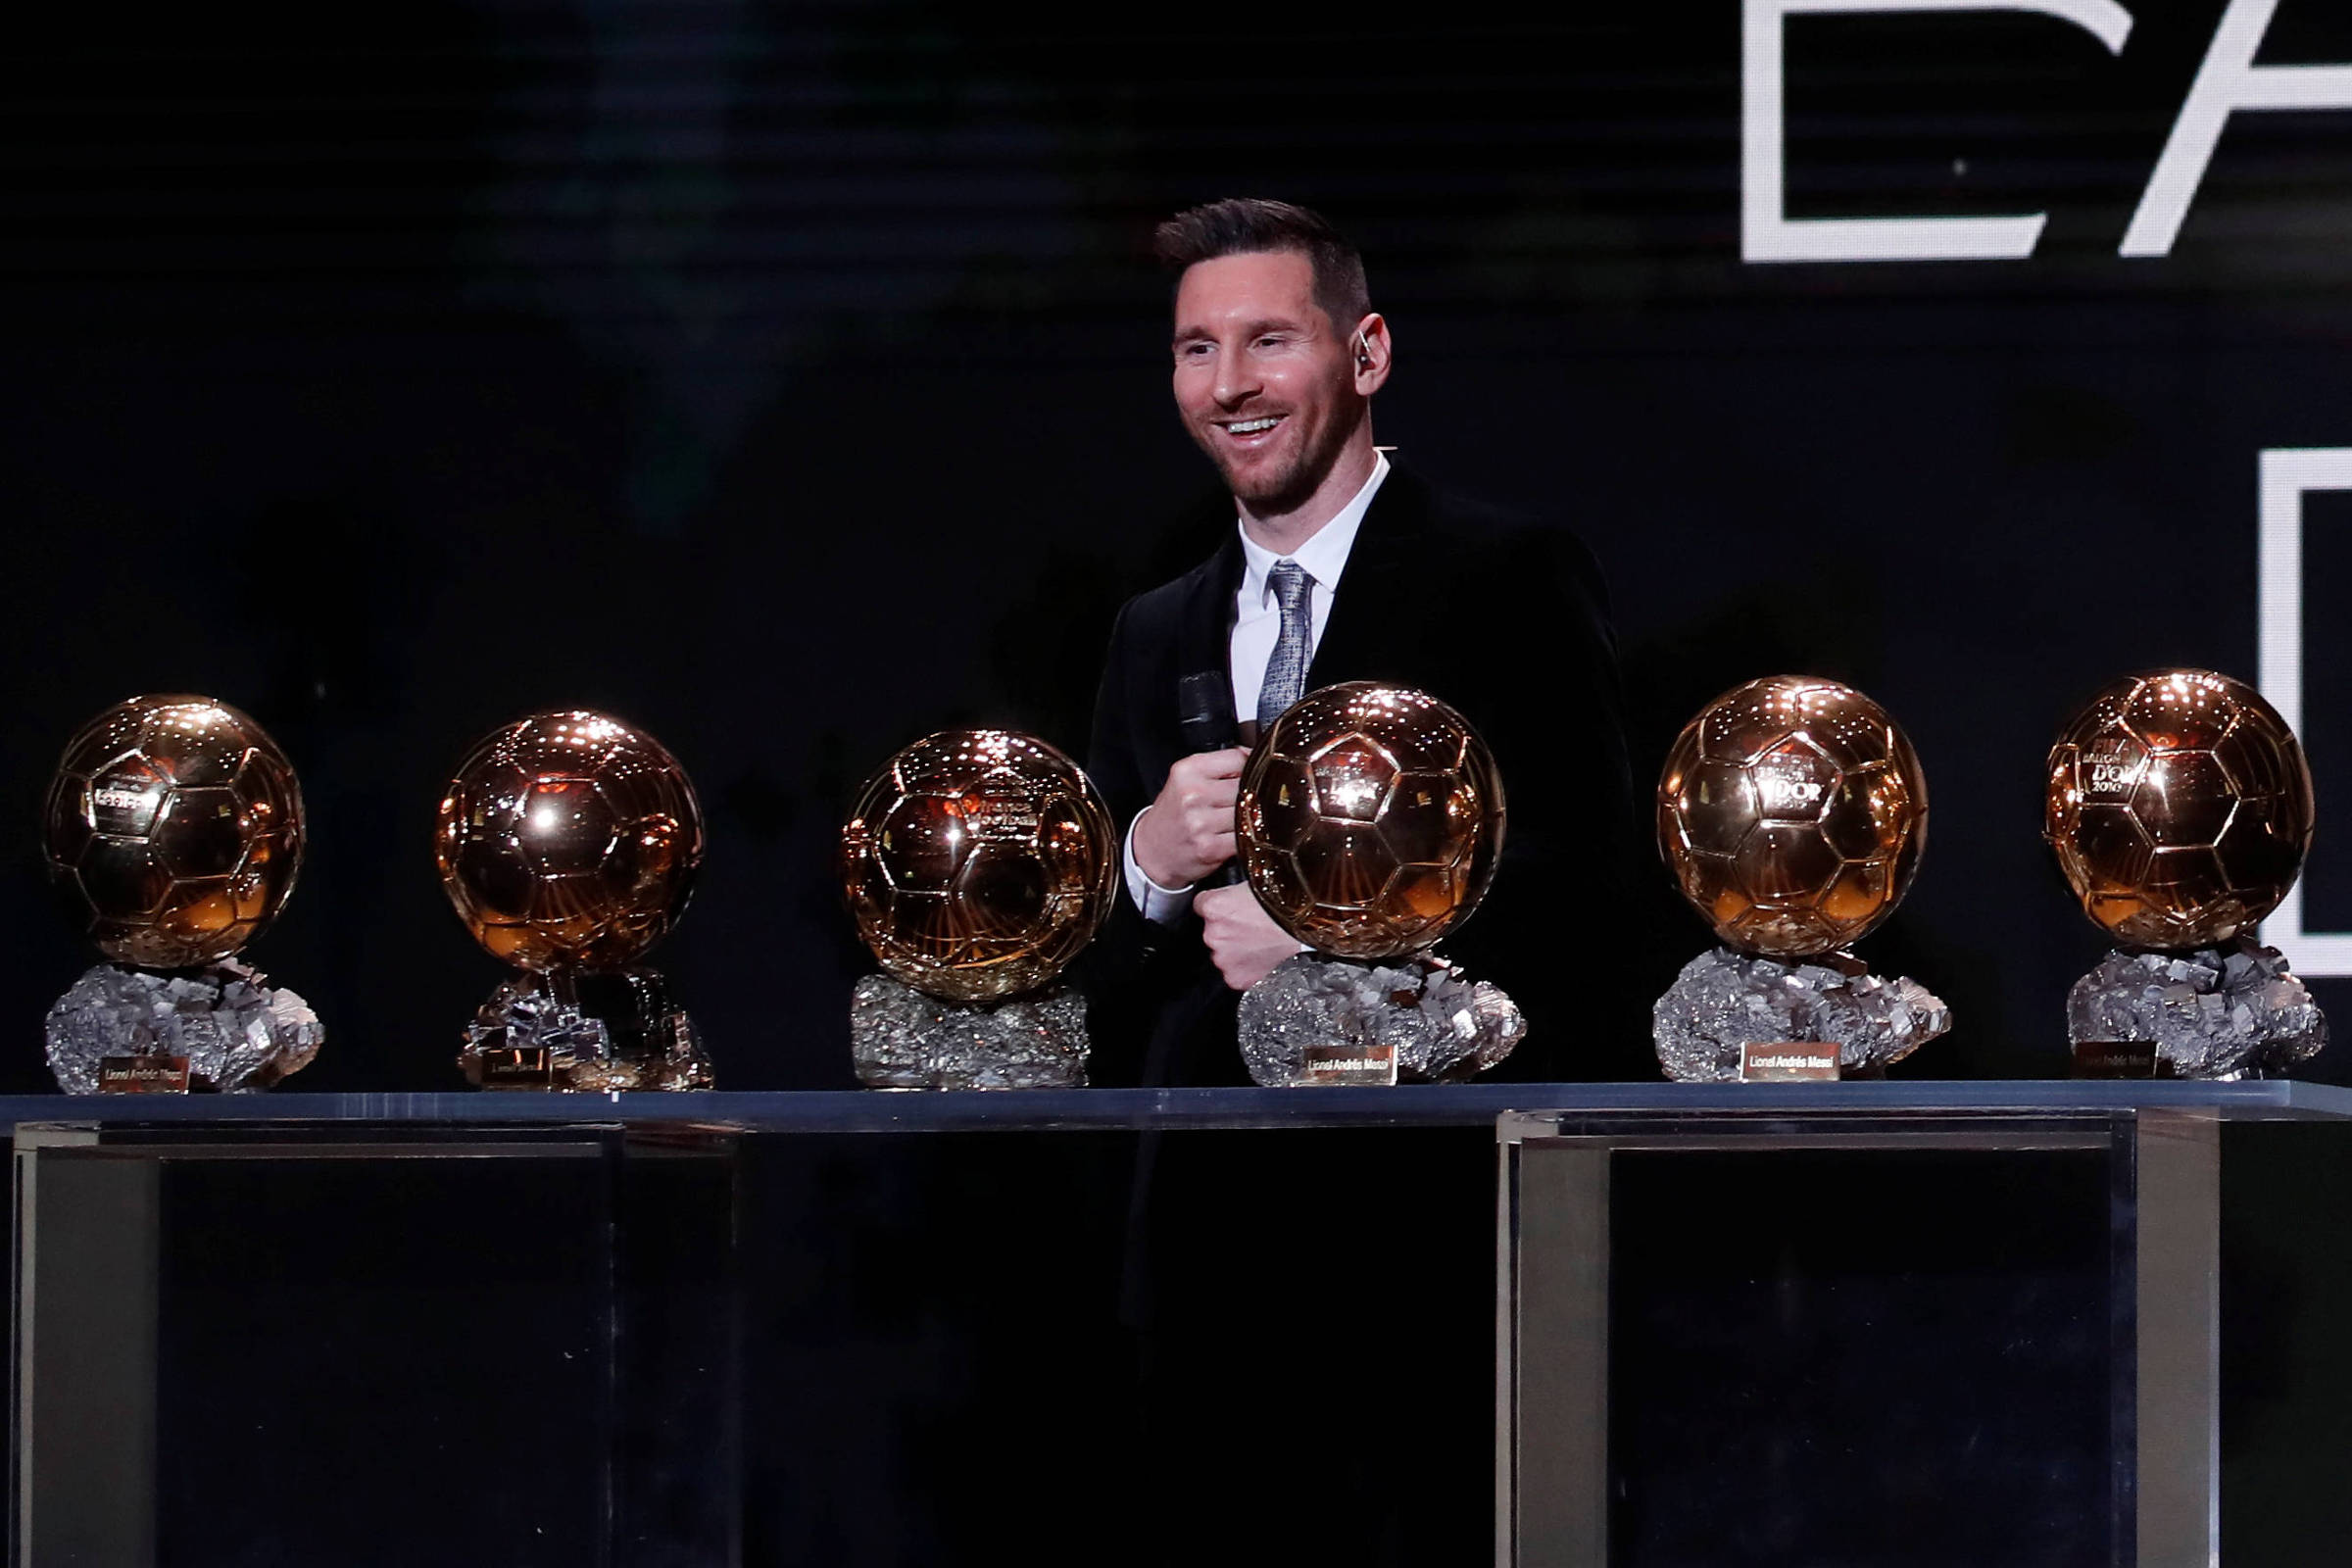 Bola de Ouro, The Best, melhor jogador: todos os prêmio individuais de  Messi